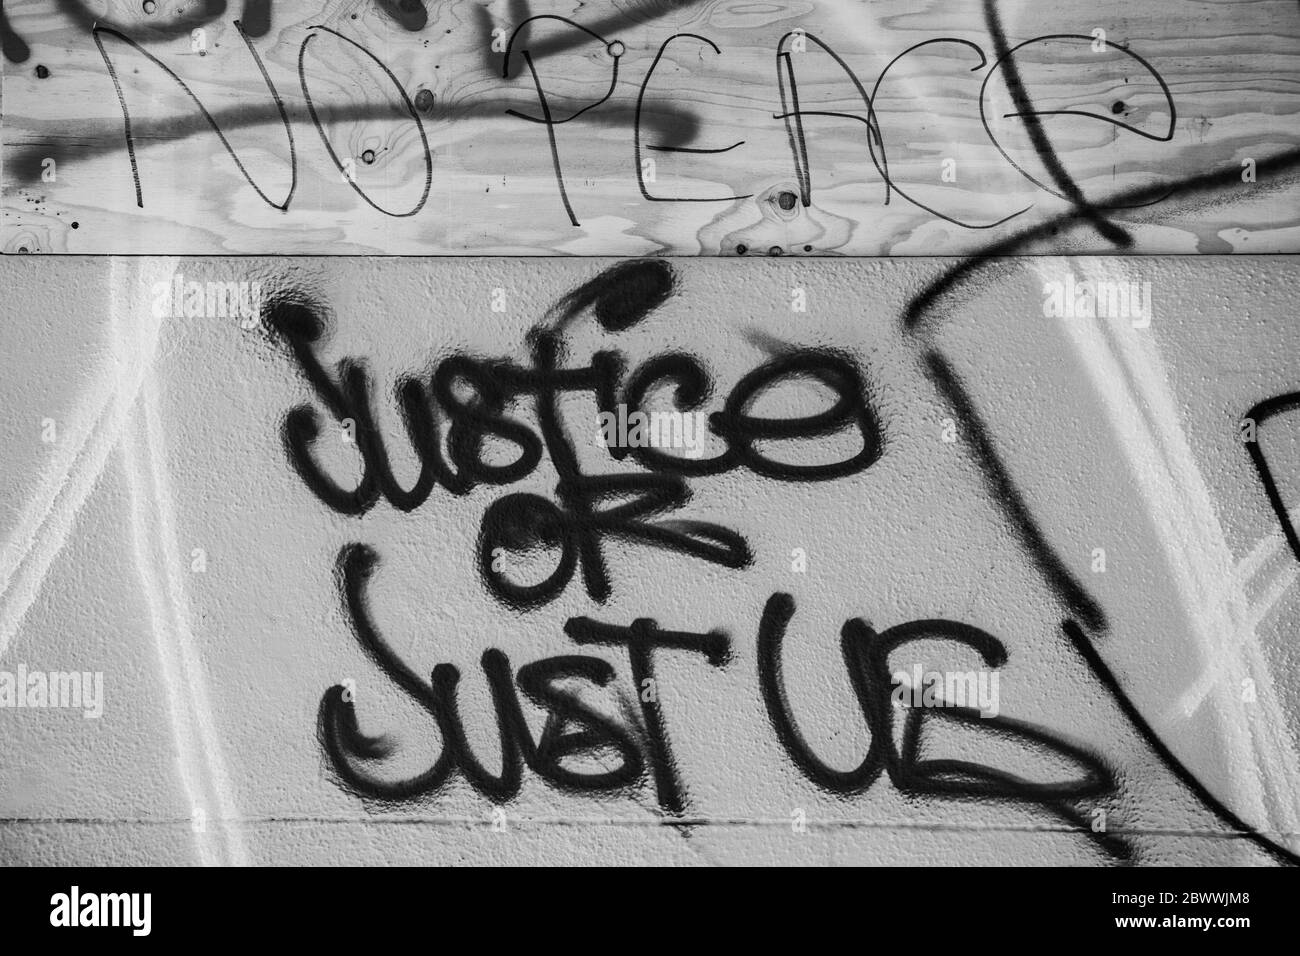 Oakland, CA. 2 de junio de 2020. Graffiti cerca del Departamento de Policía de Oakland, California el 2 de junio de 2020 después de la muerte de George Floyd. Crédito: Chris Tuite/Image Space/Media Punch/Alamy Live News Foto de stock